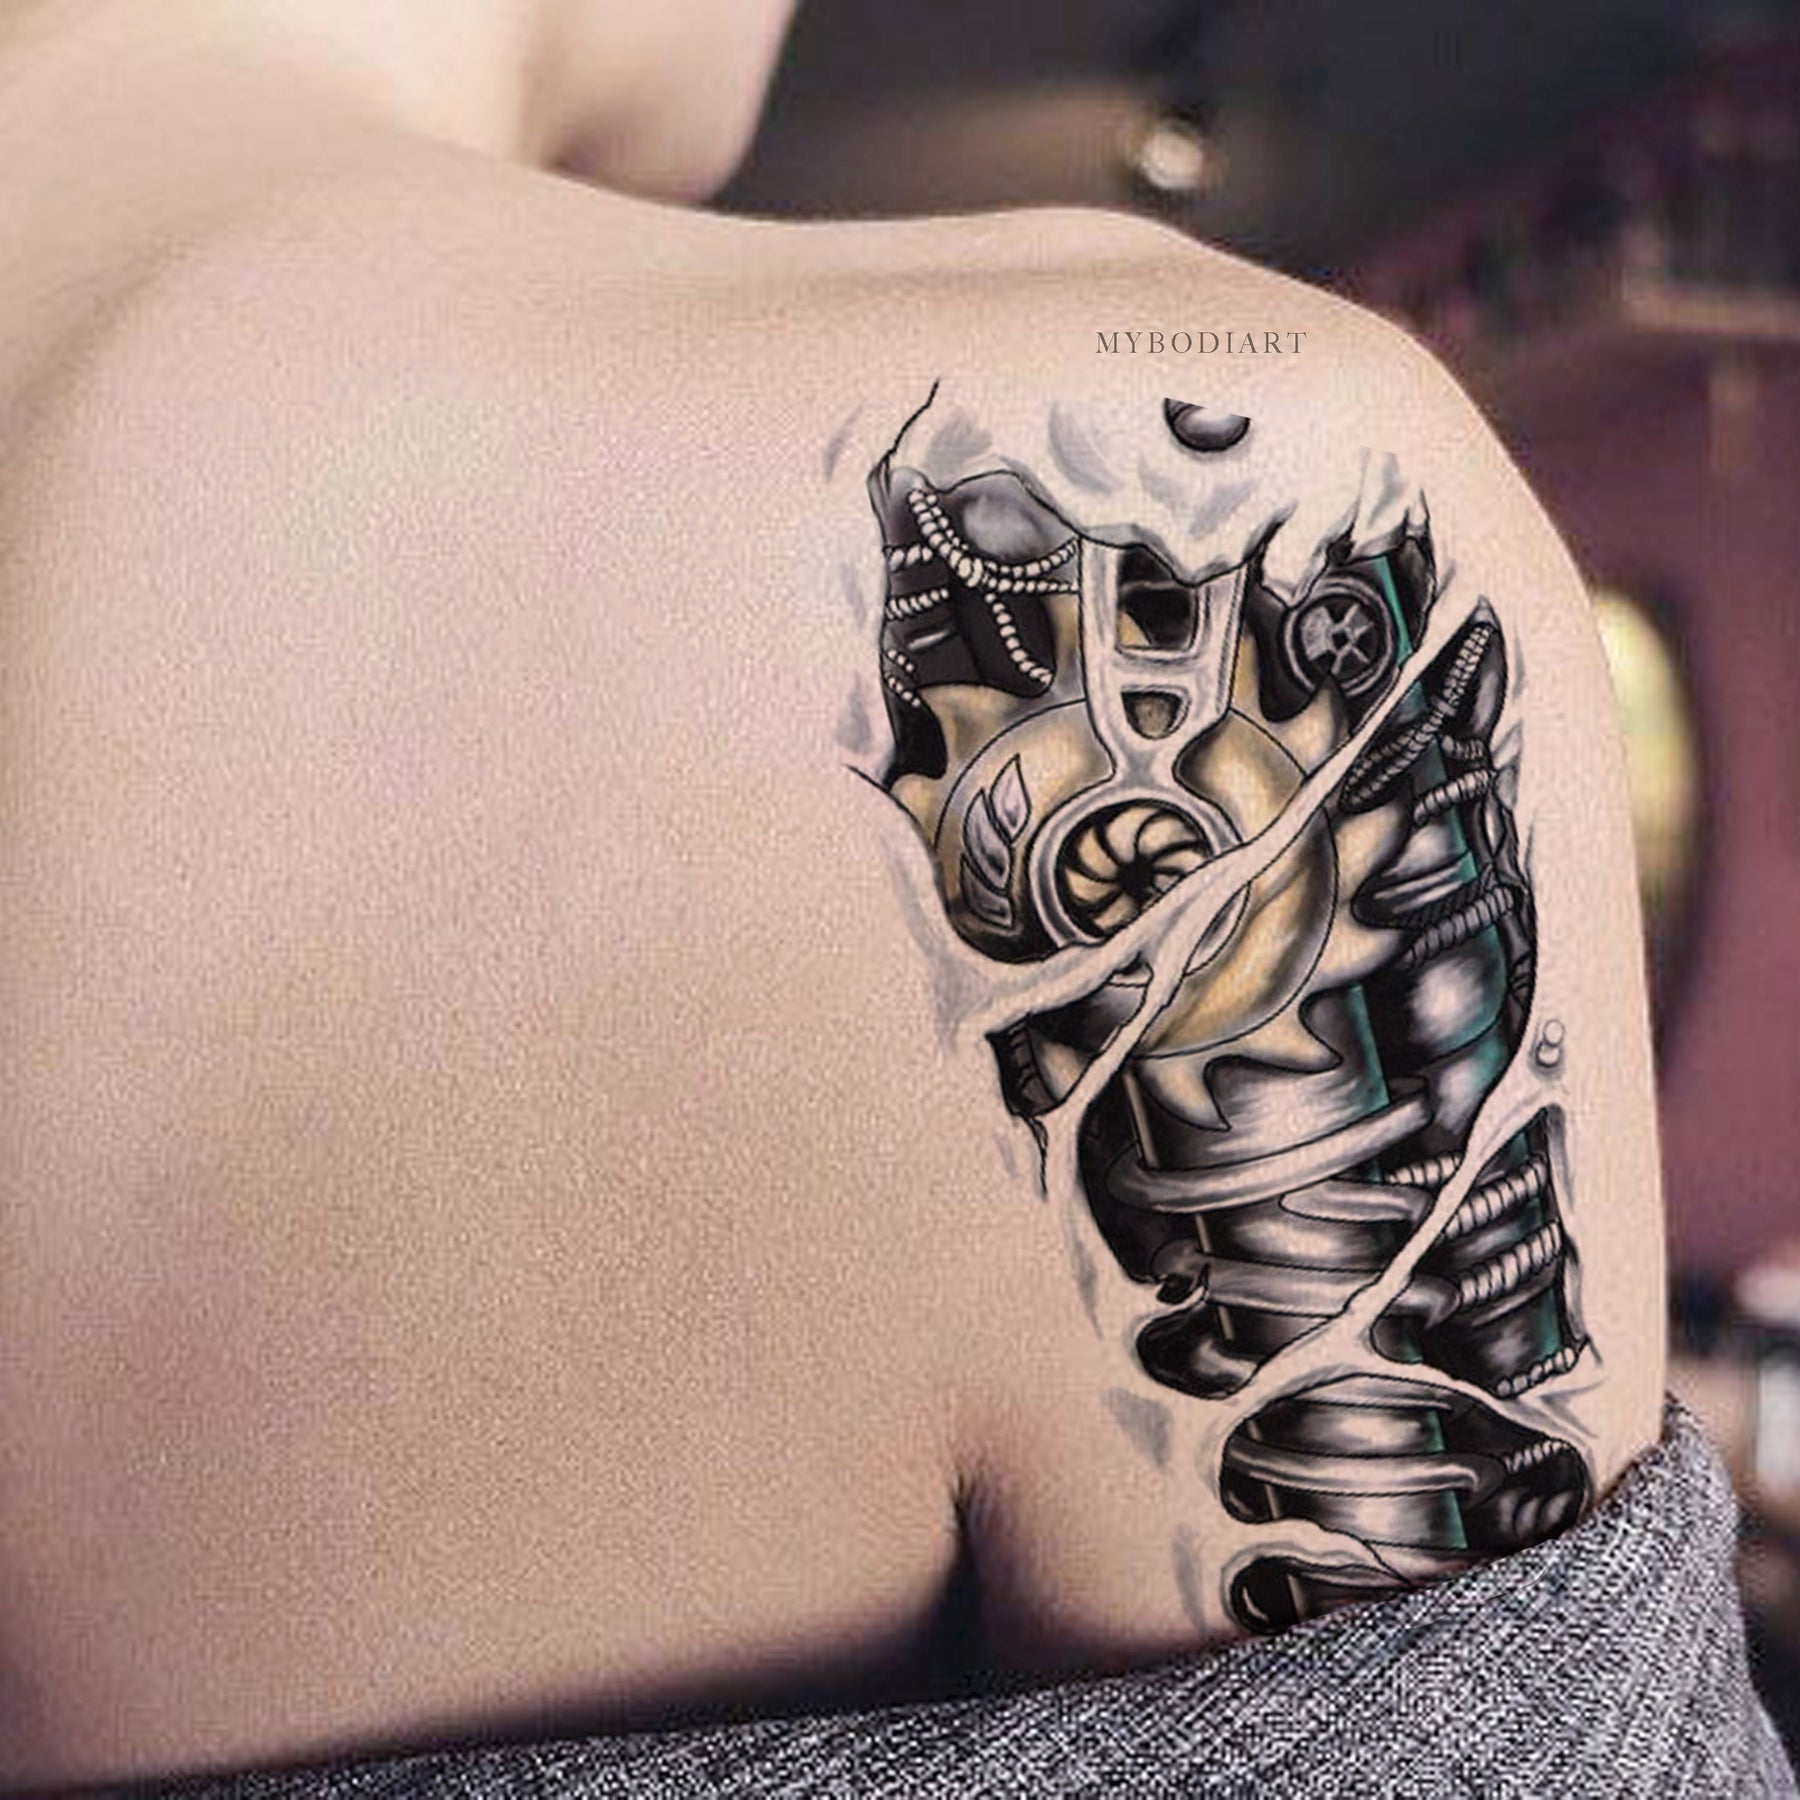 Valhalla Tattoo  terminator arm tattoo labrujabathory tattoo 1ra  sesión  Facebook